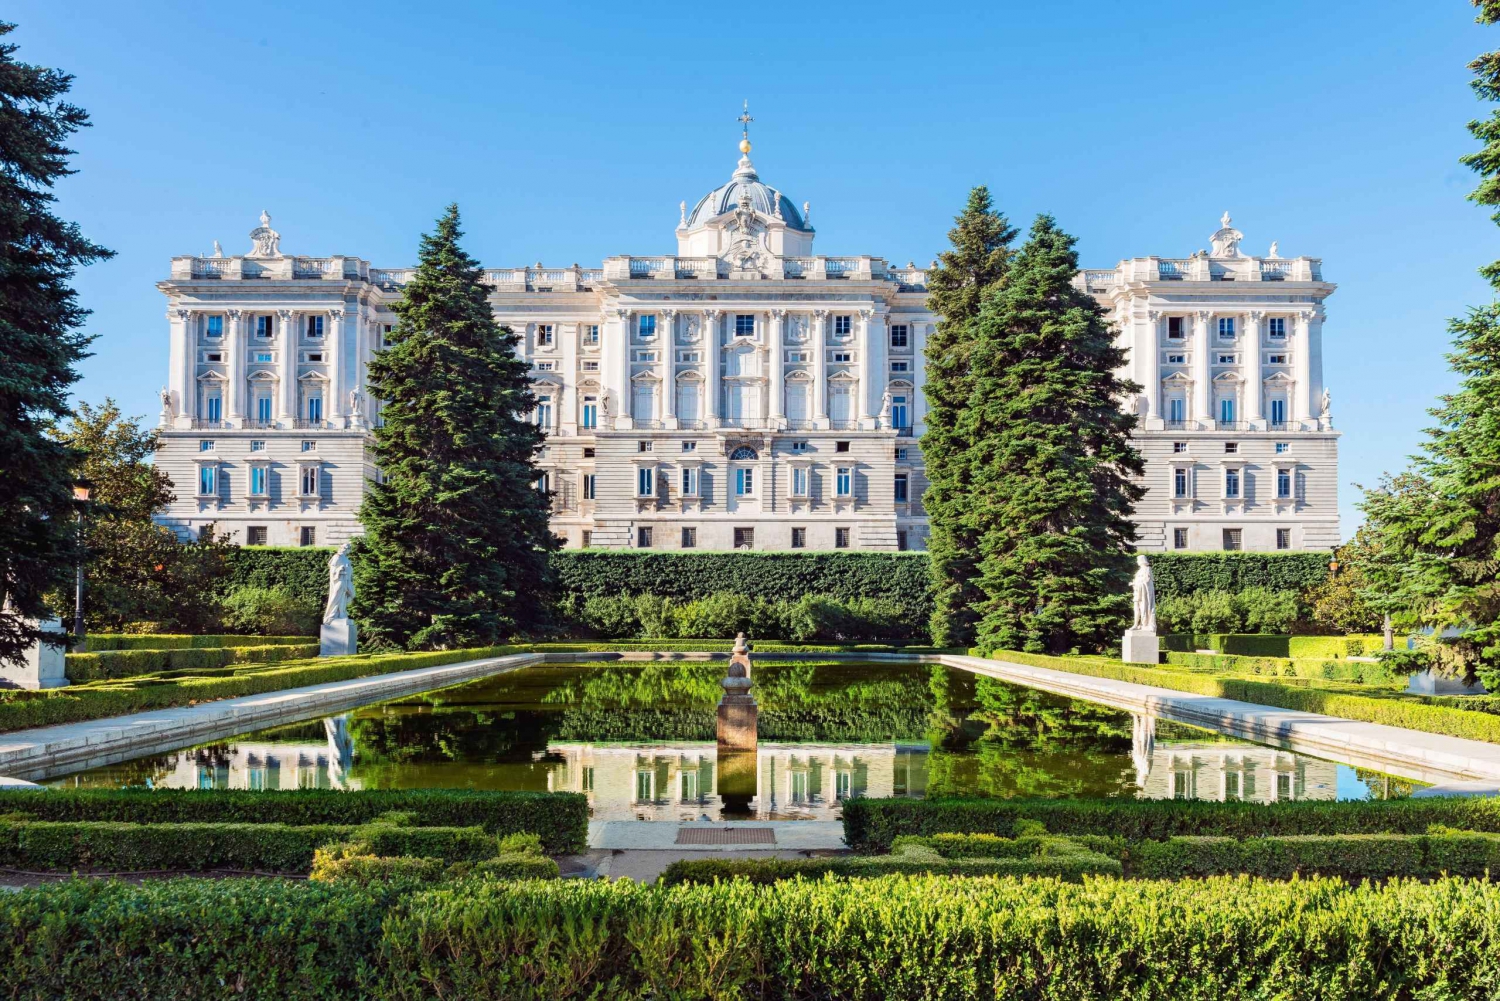 Madrid: Kungliga palatset Guidad tur med inträdesbiljett